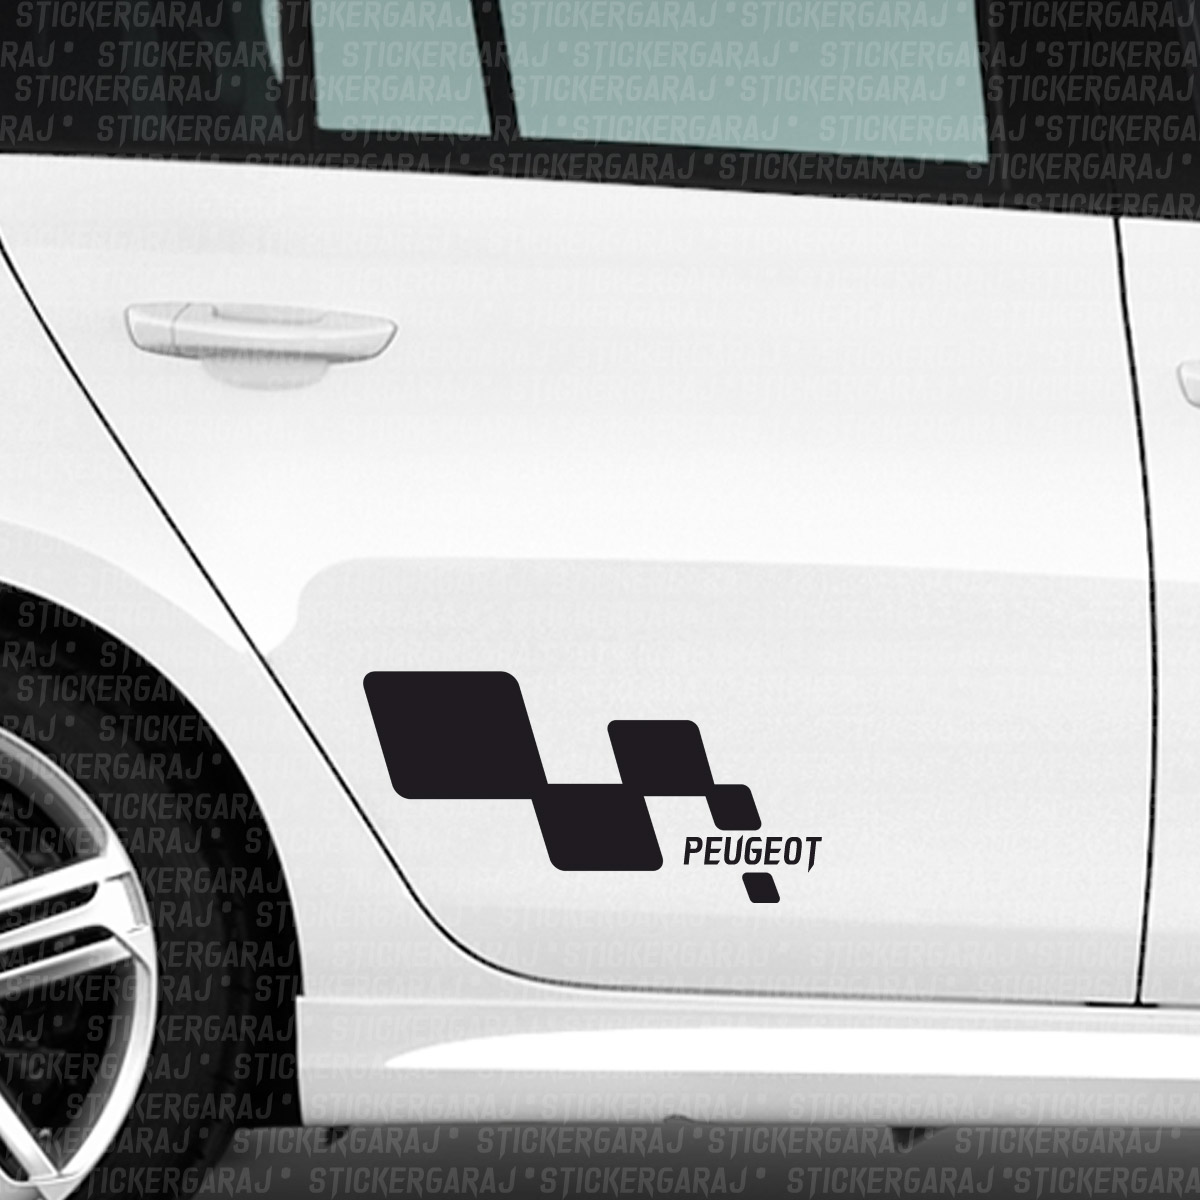 Peugeot sticker aksesuar - Peugeot Sticker Yan Kapı aksesuar